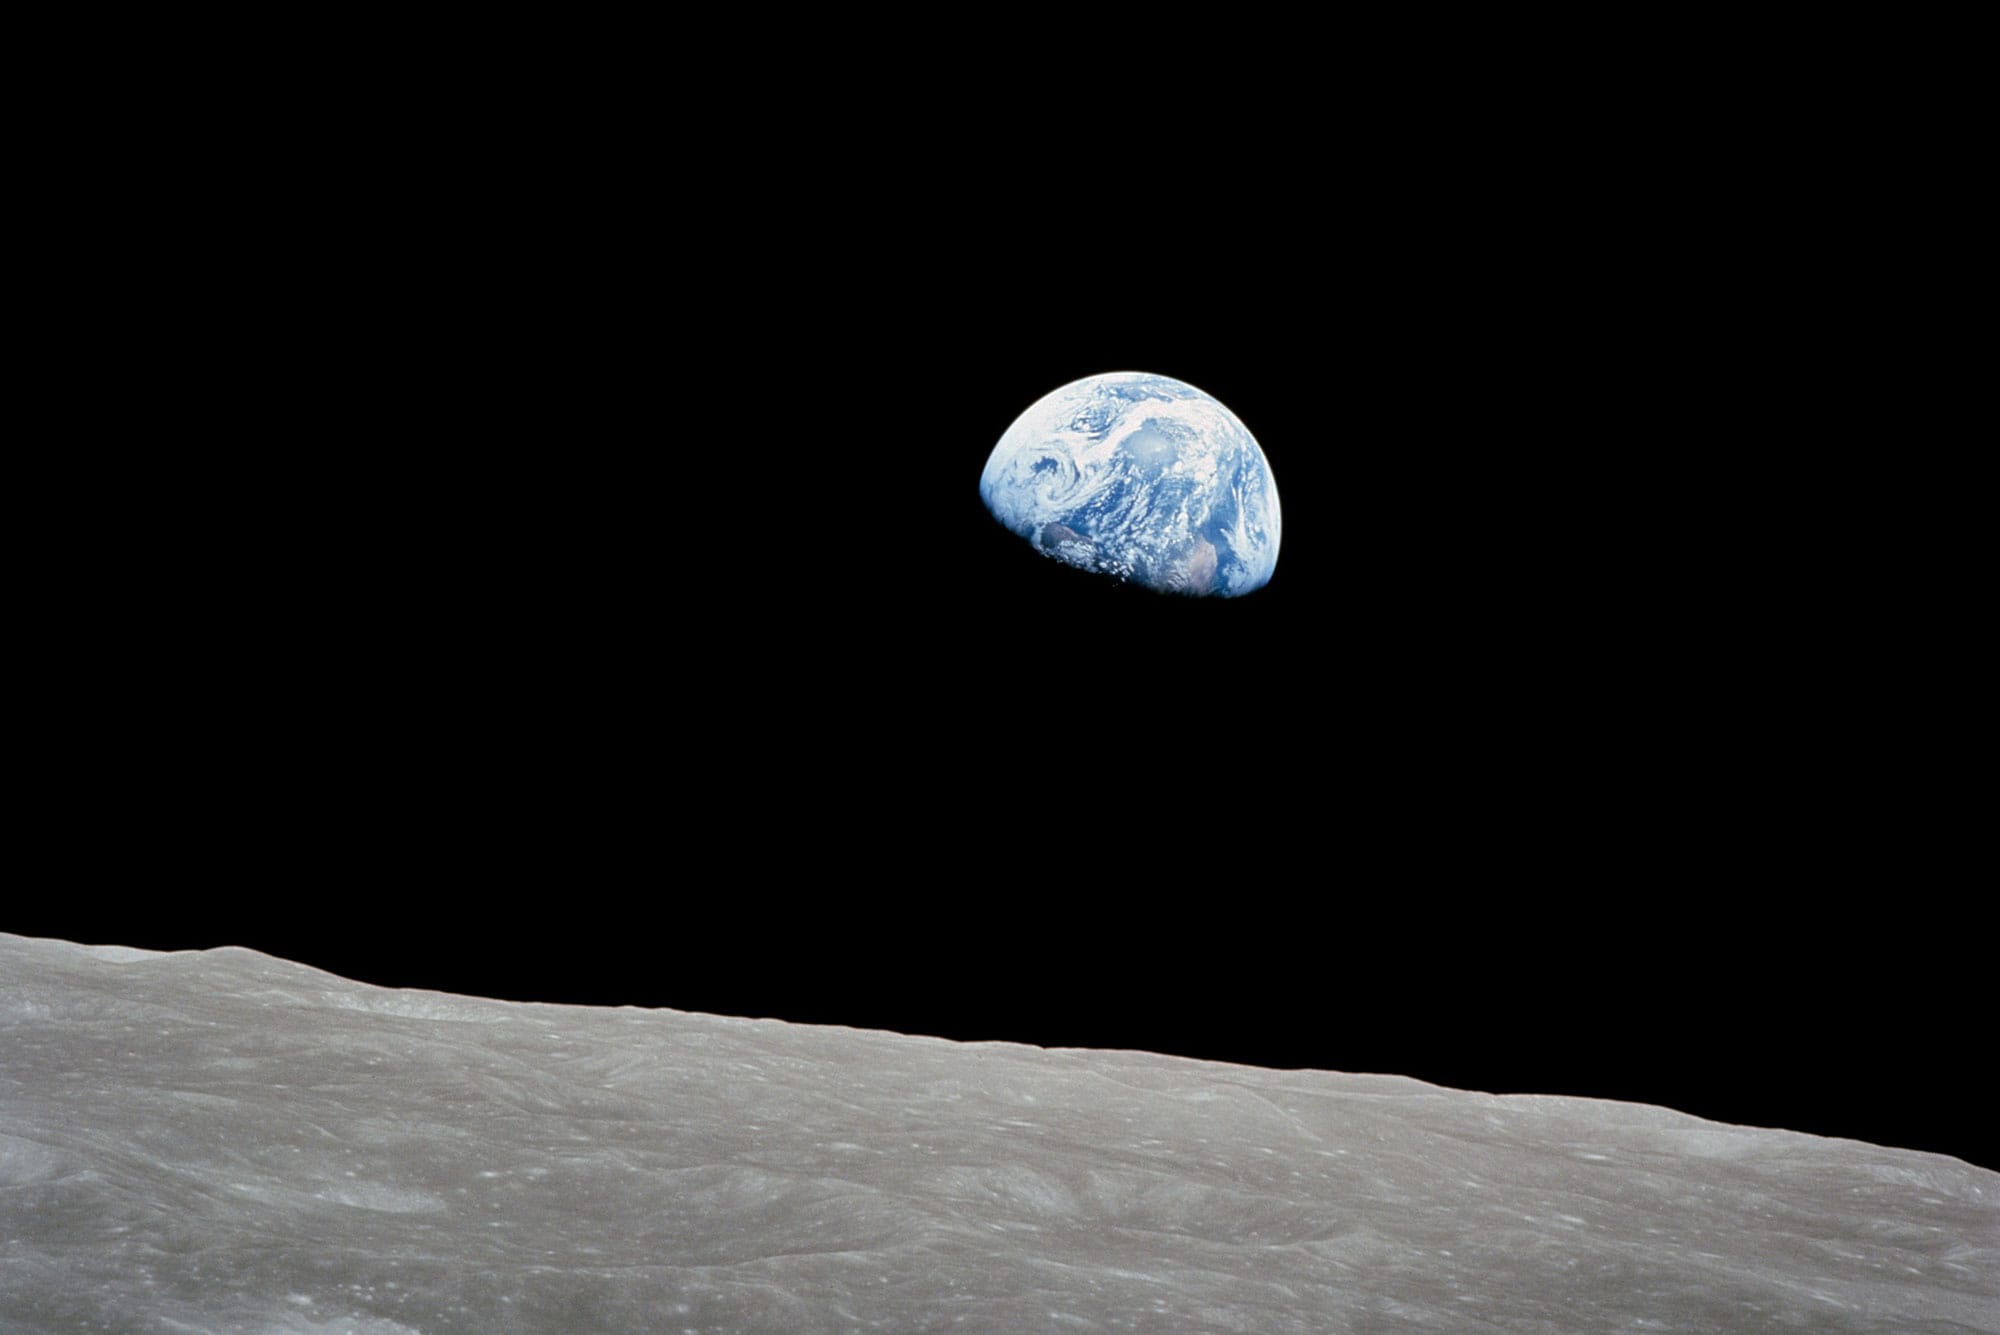 Foto de la Tierra tomada por el Apolo 8